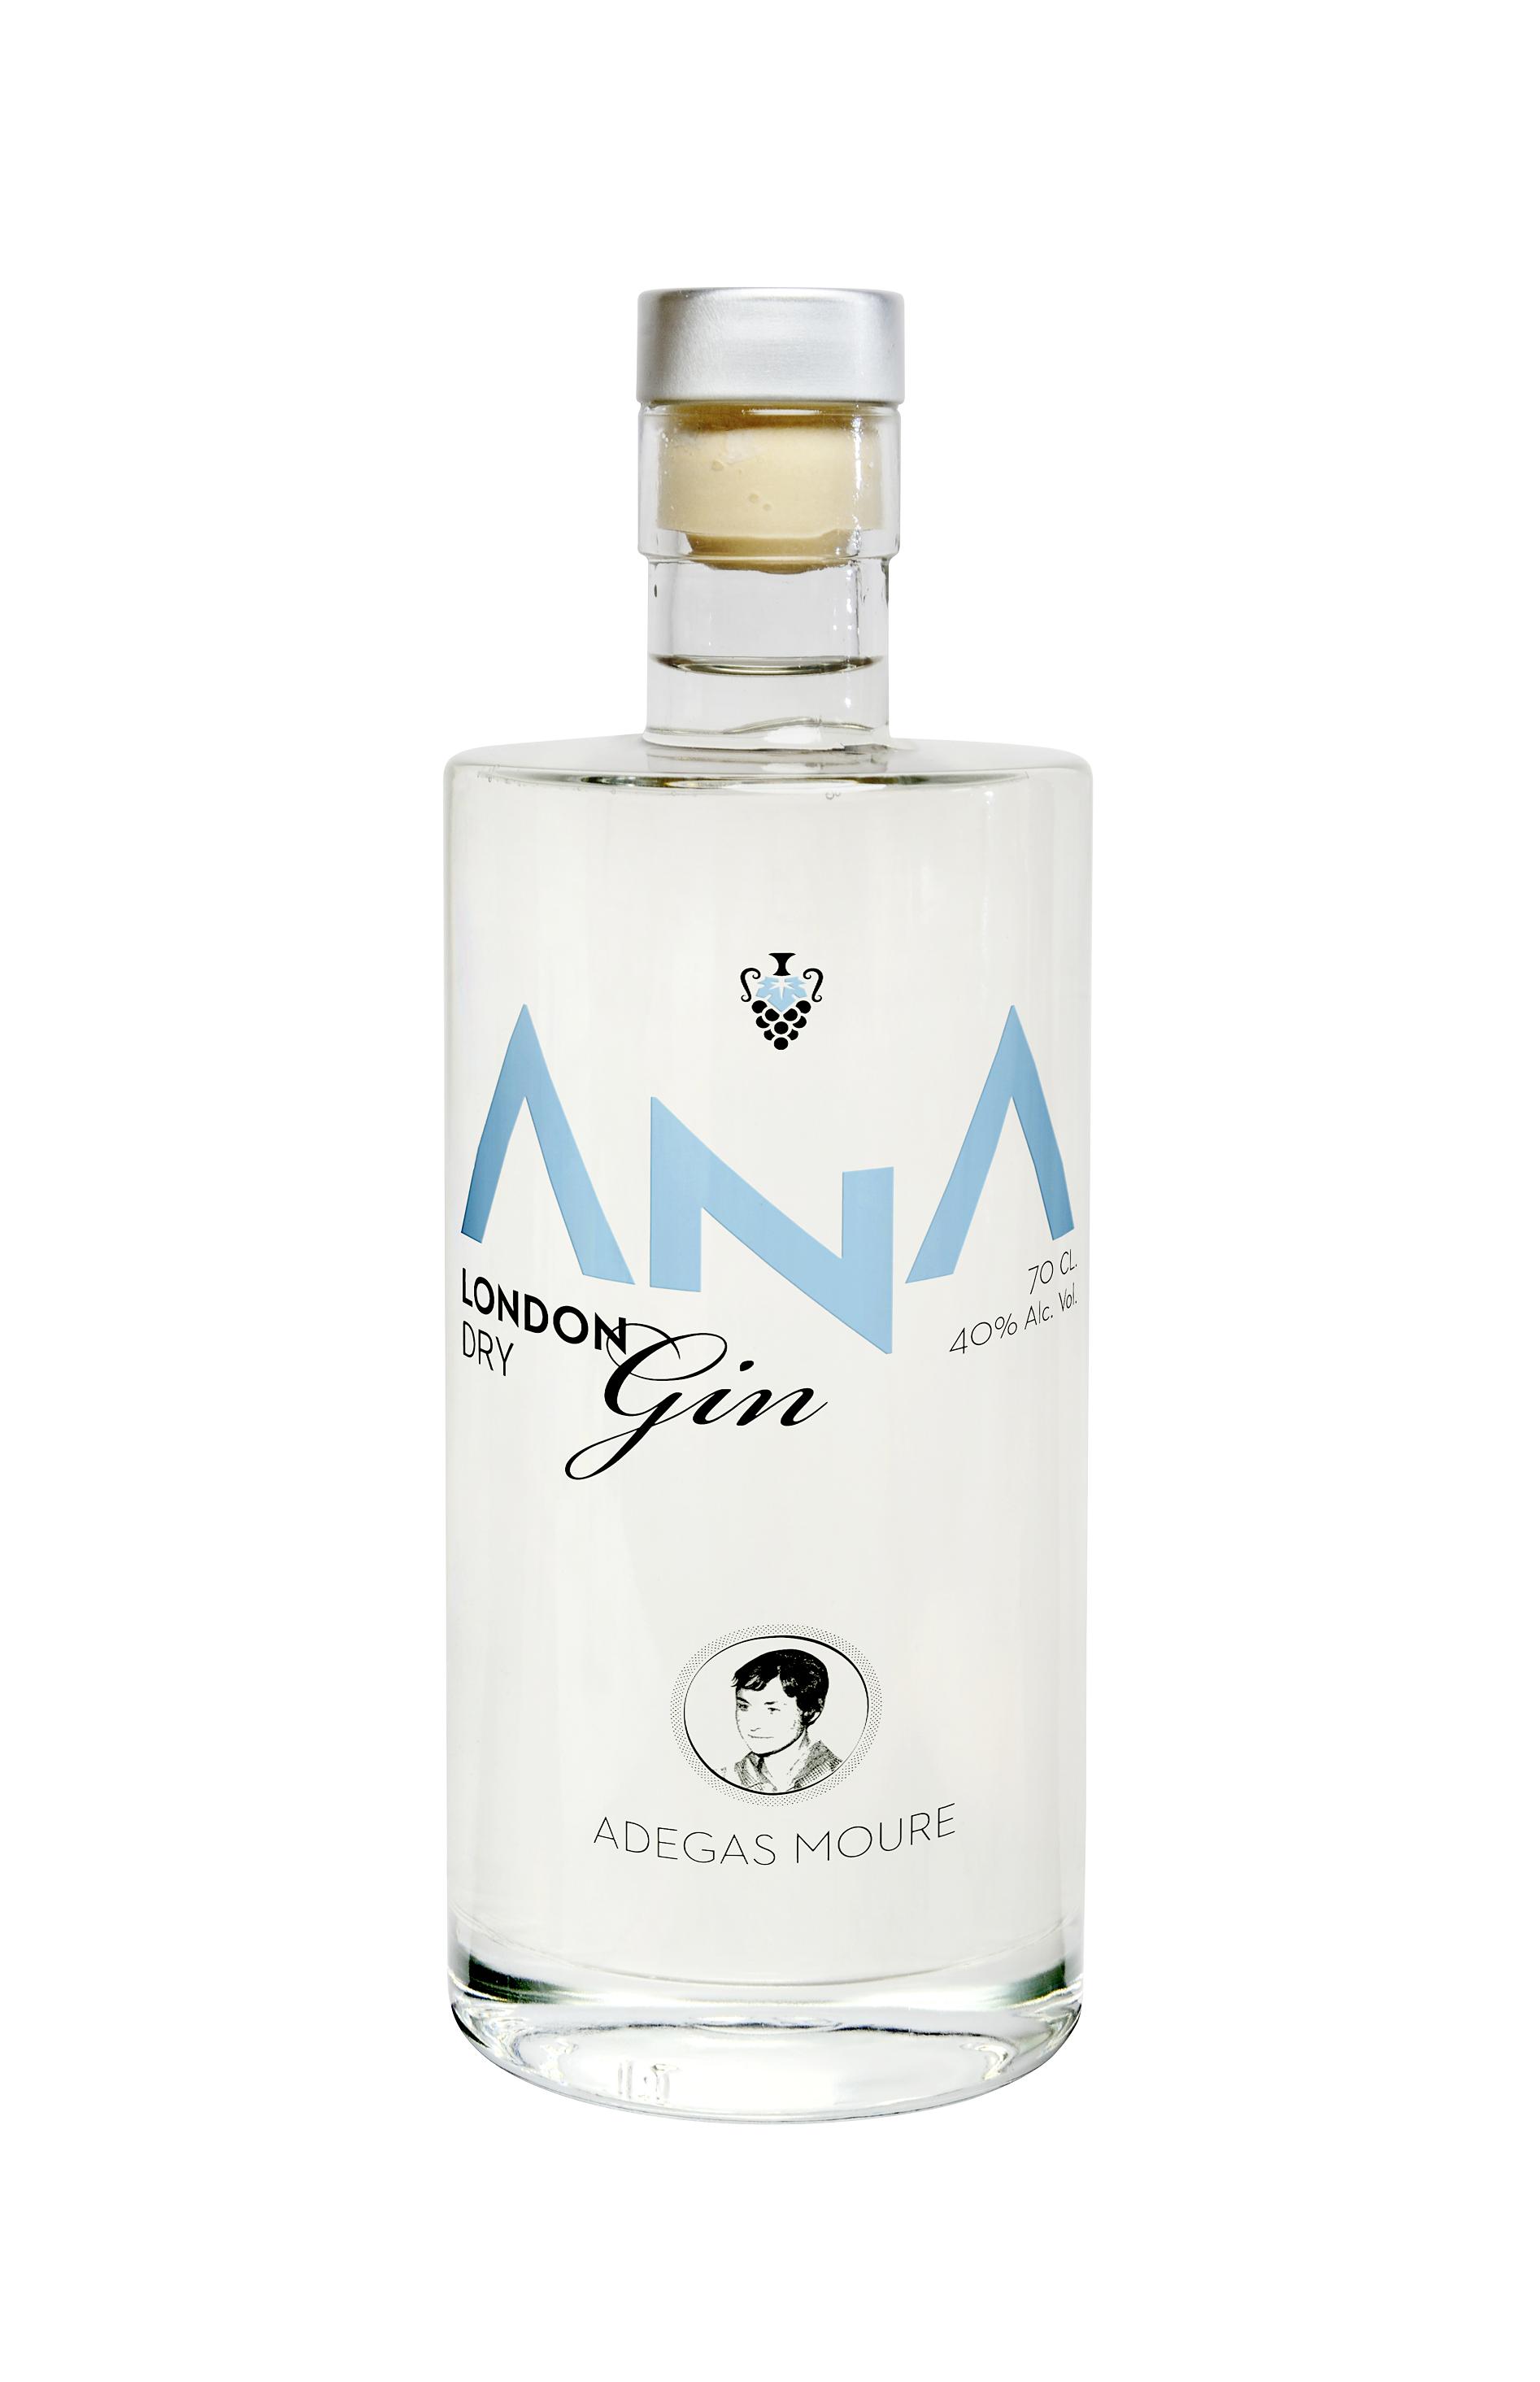 ANA London Dry Gin - Adegas Moure